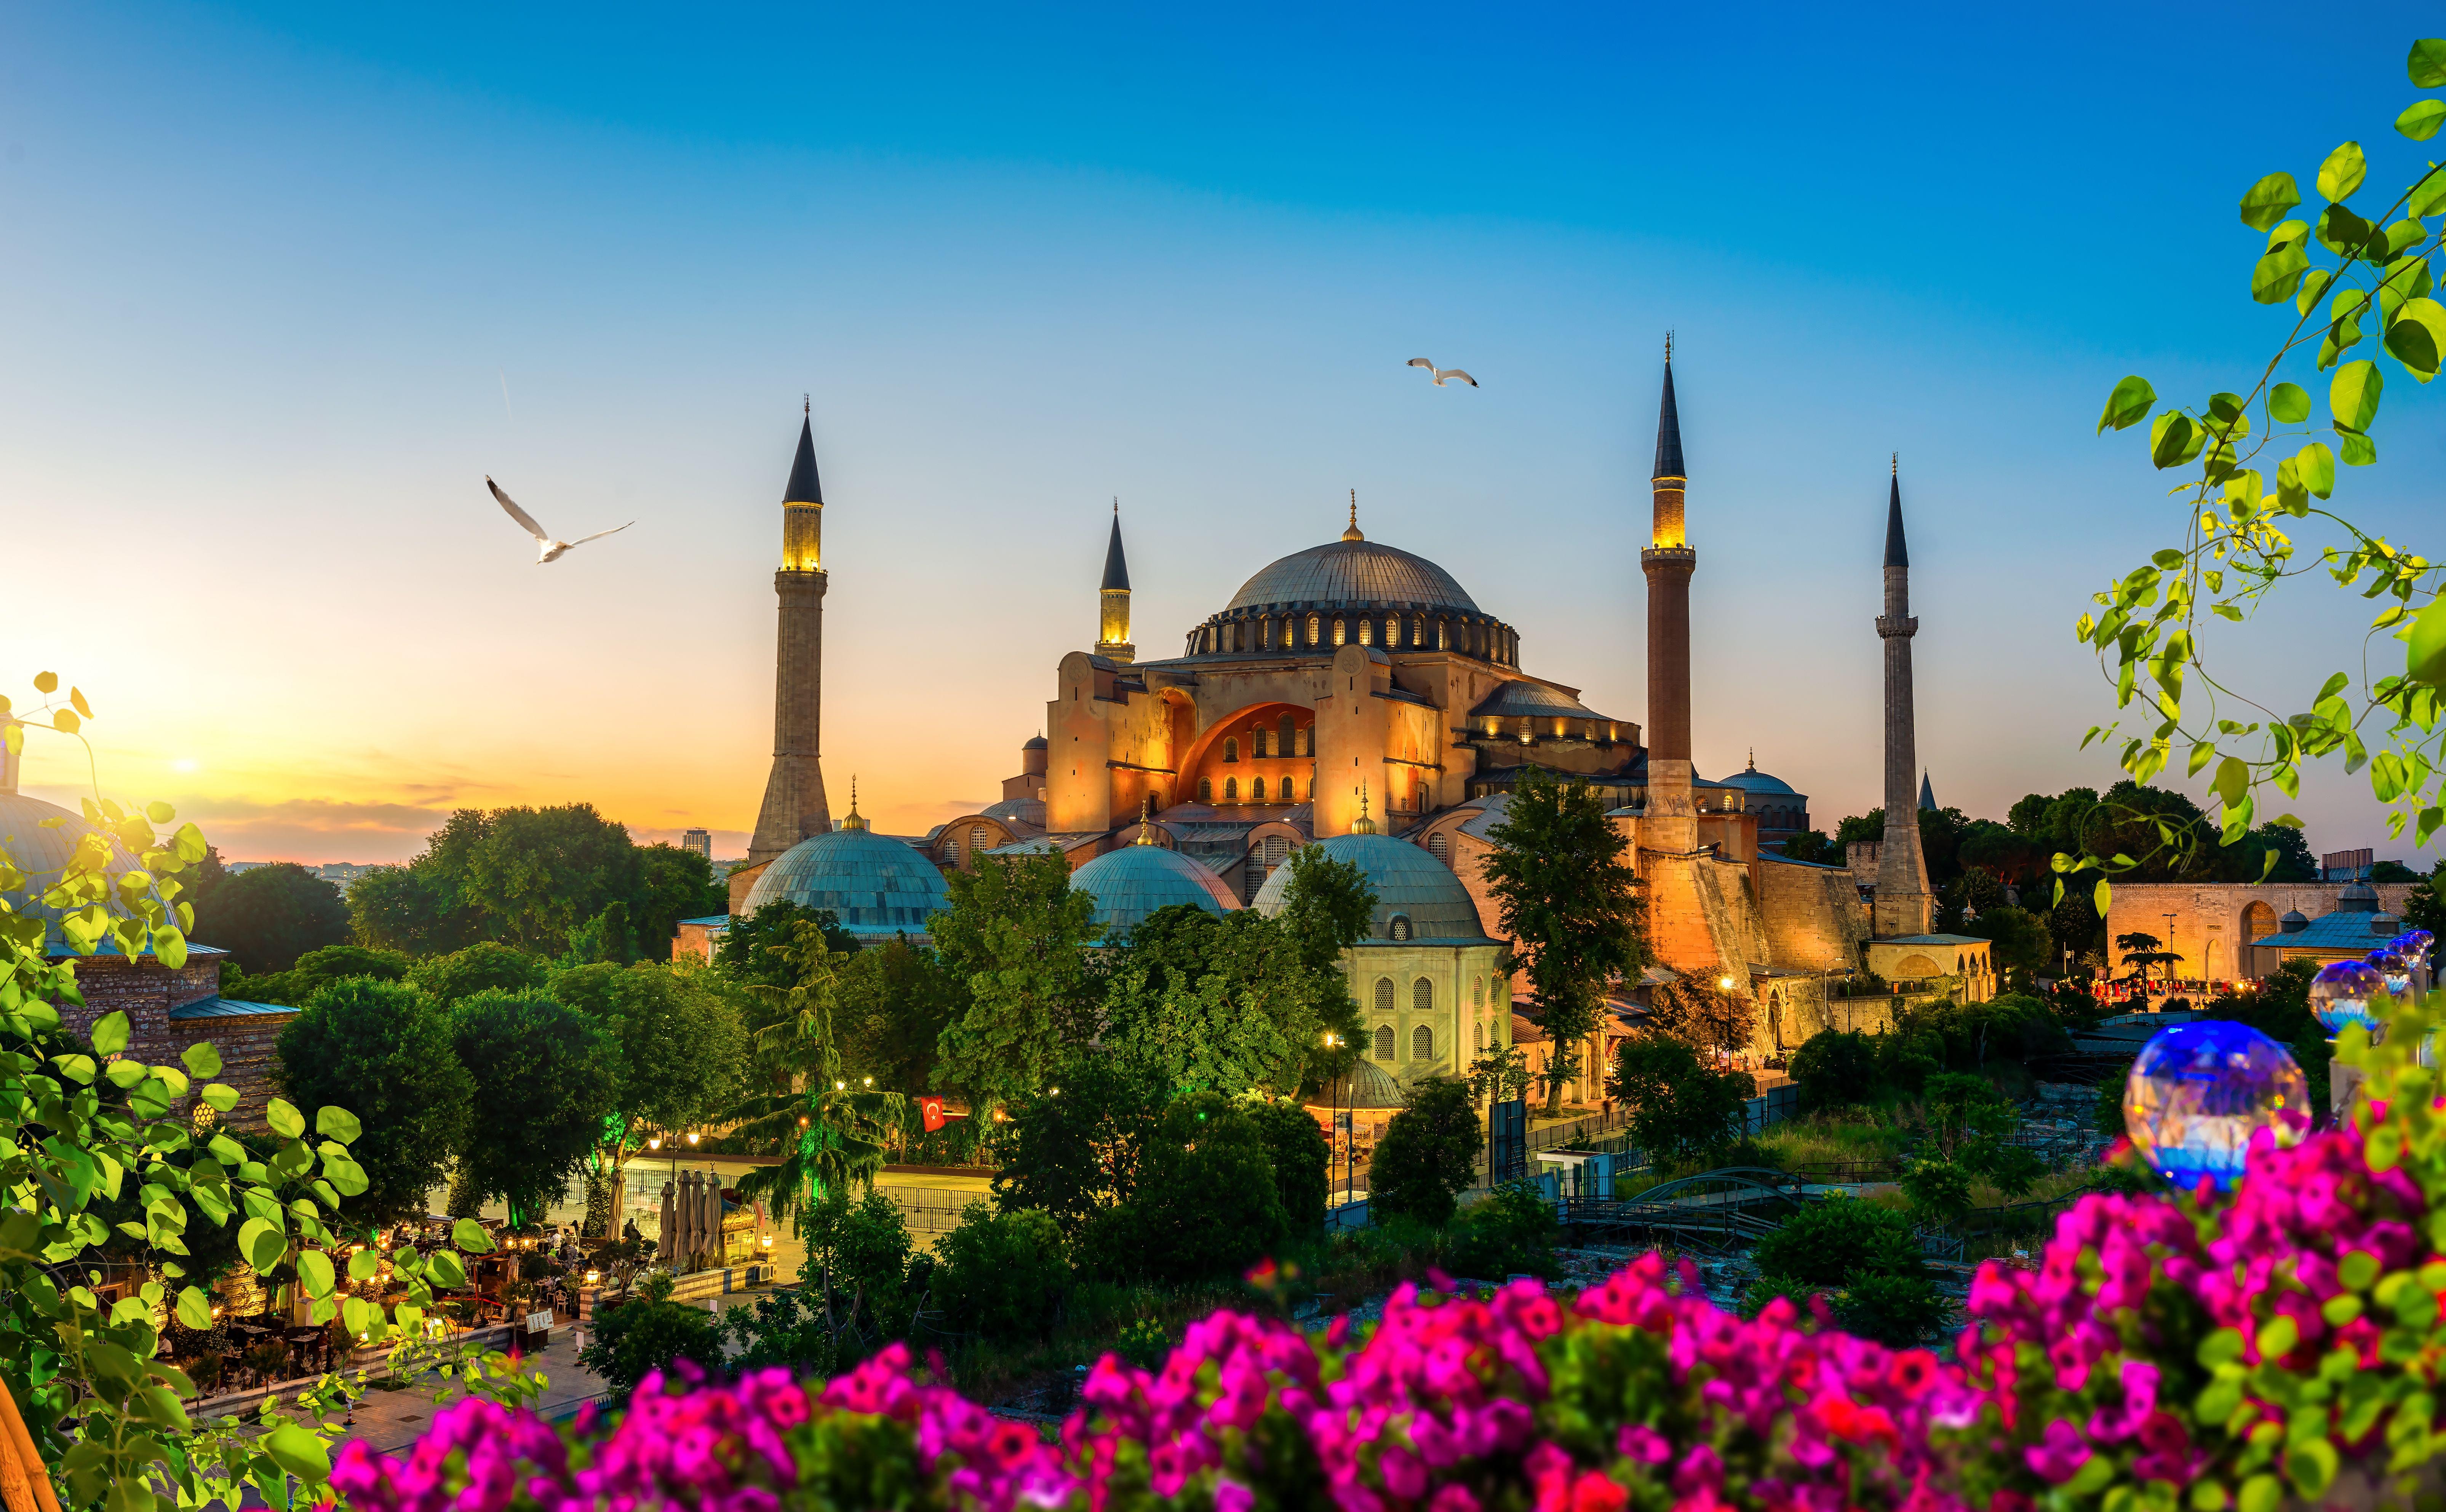 Hagia Sophia Architecture